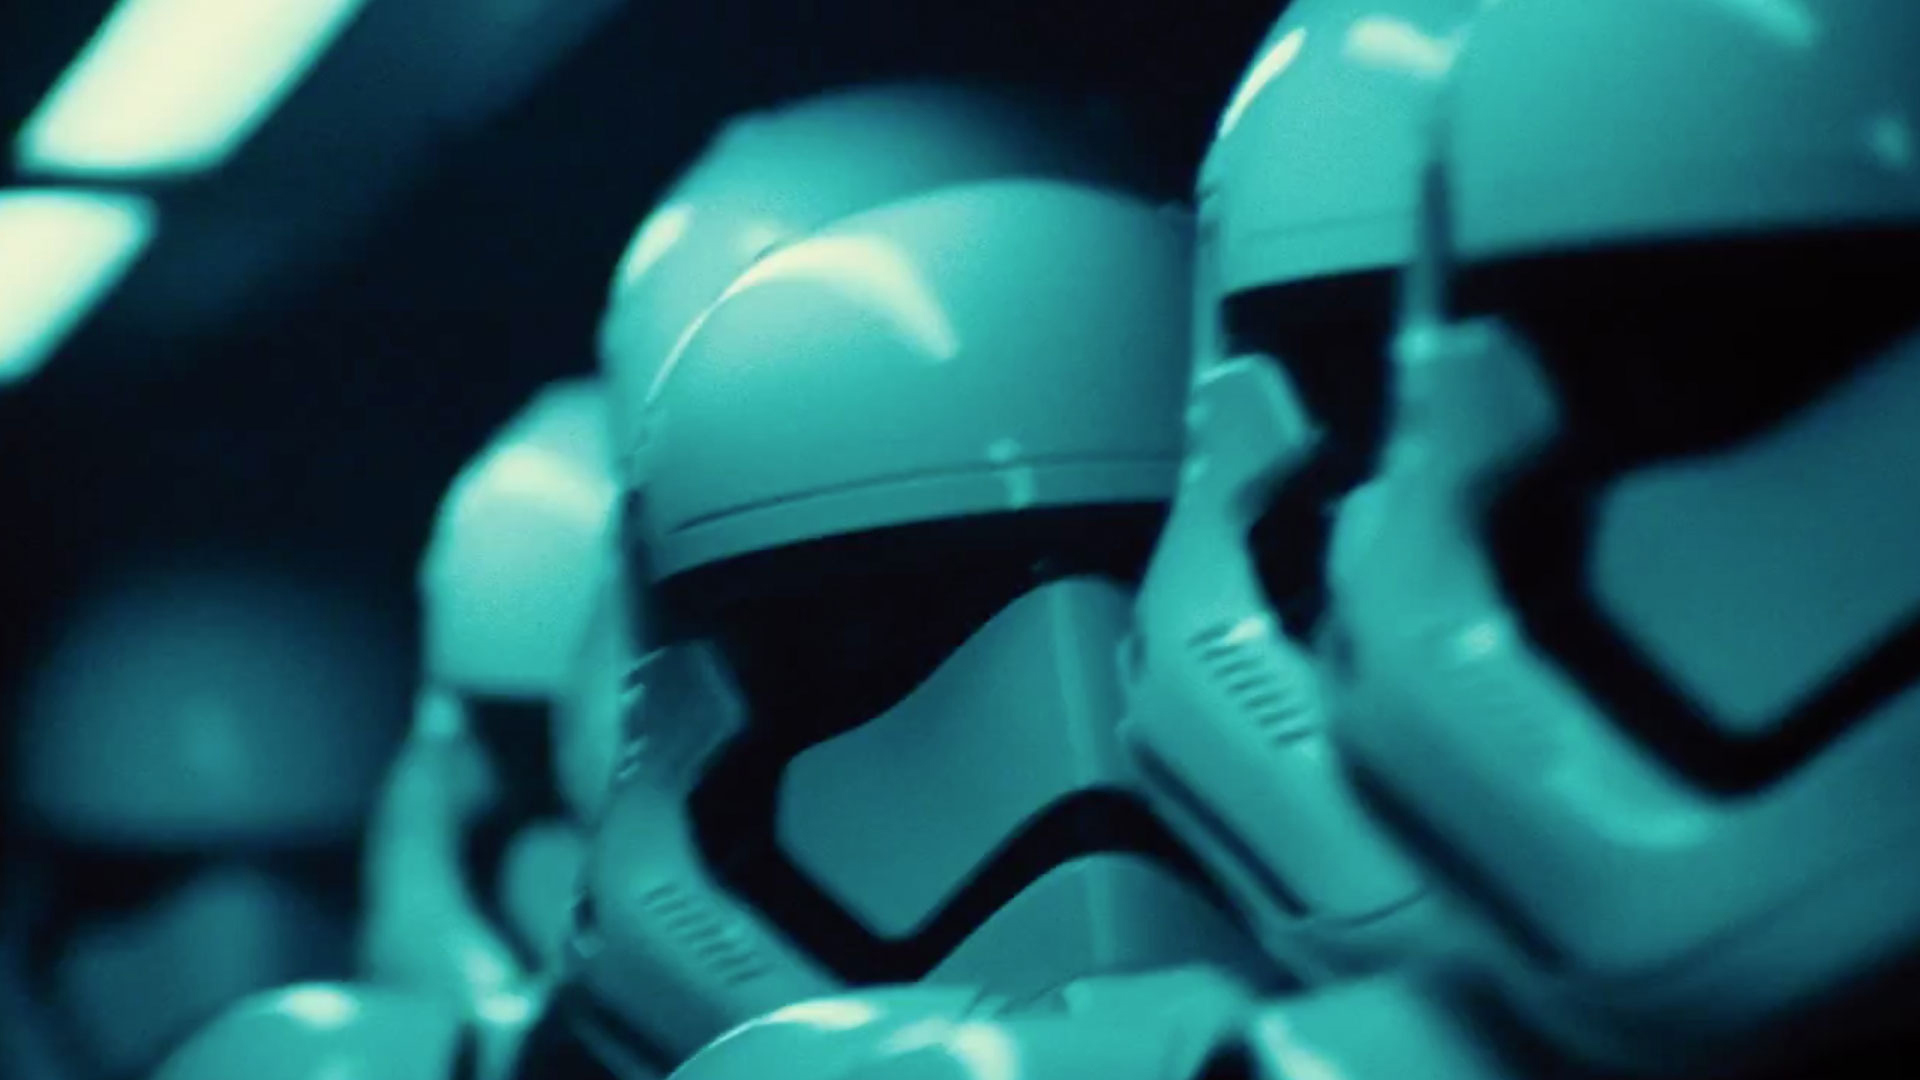 Star Wars The Force Awakens HD Image Released By Disney Slashgear